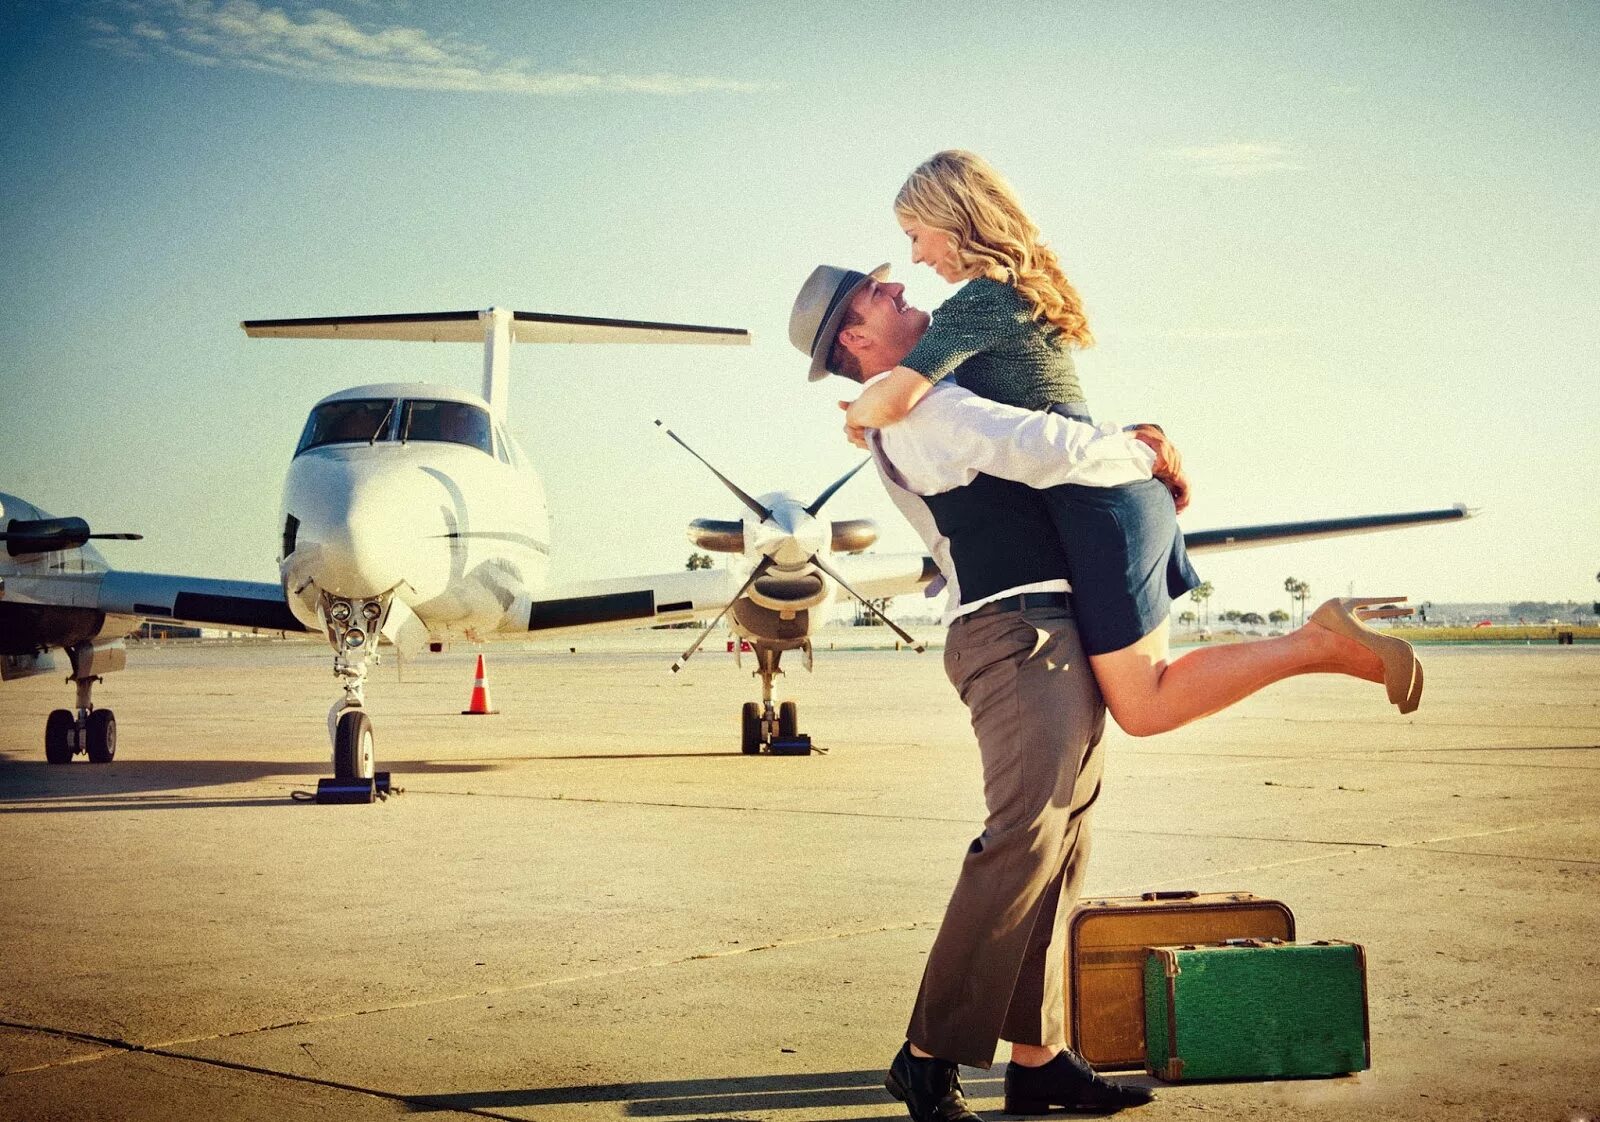 Парень и девушка в аэропорту. Девушка в самолете. Радостная встреча. Встреча в аэропорту влюбленных.